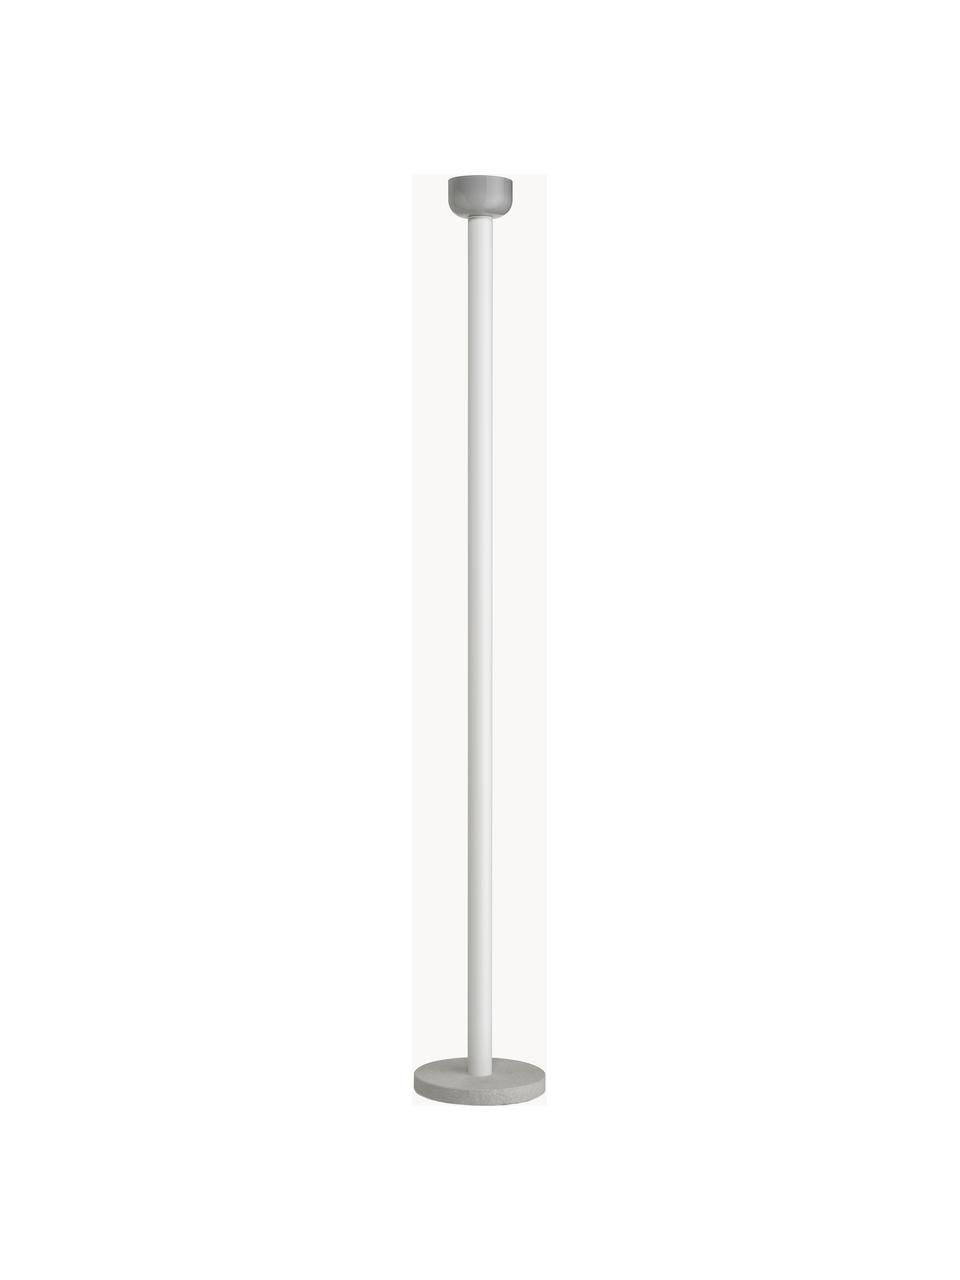 Lámpara de pie grande LED regulable Bellhop, Pantalla: vidrio, Estructura: aluminio recubierto, Cable: plástico, Gris, Al 178 cm